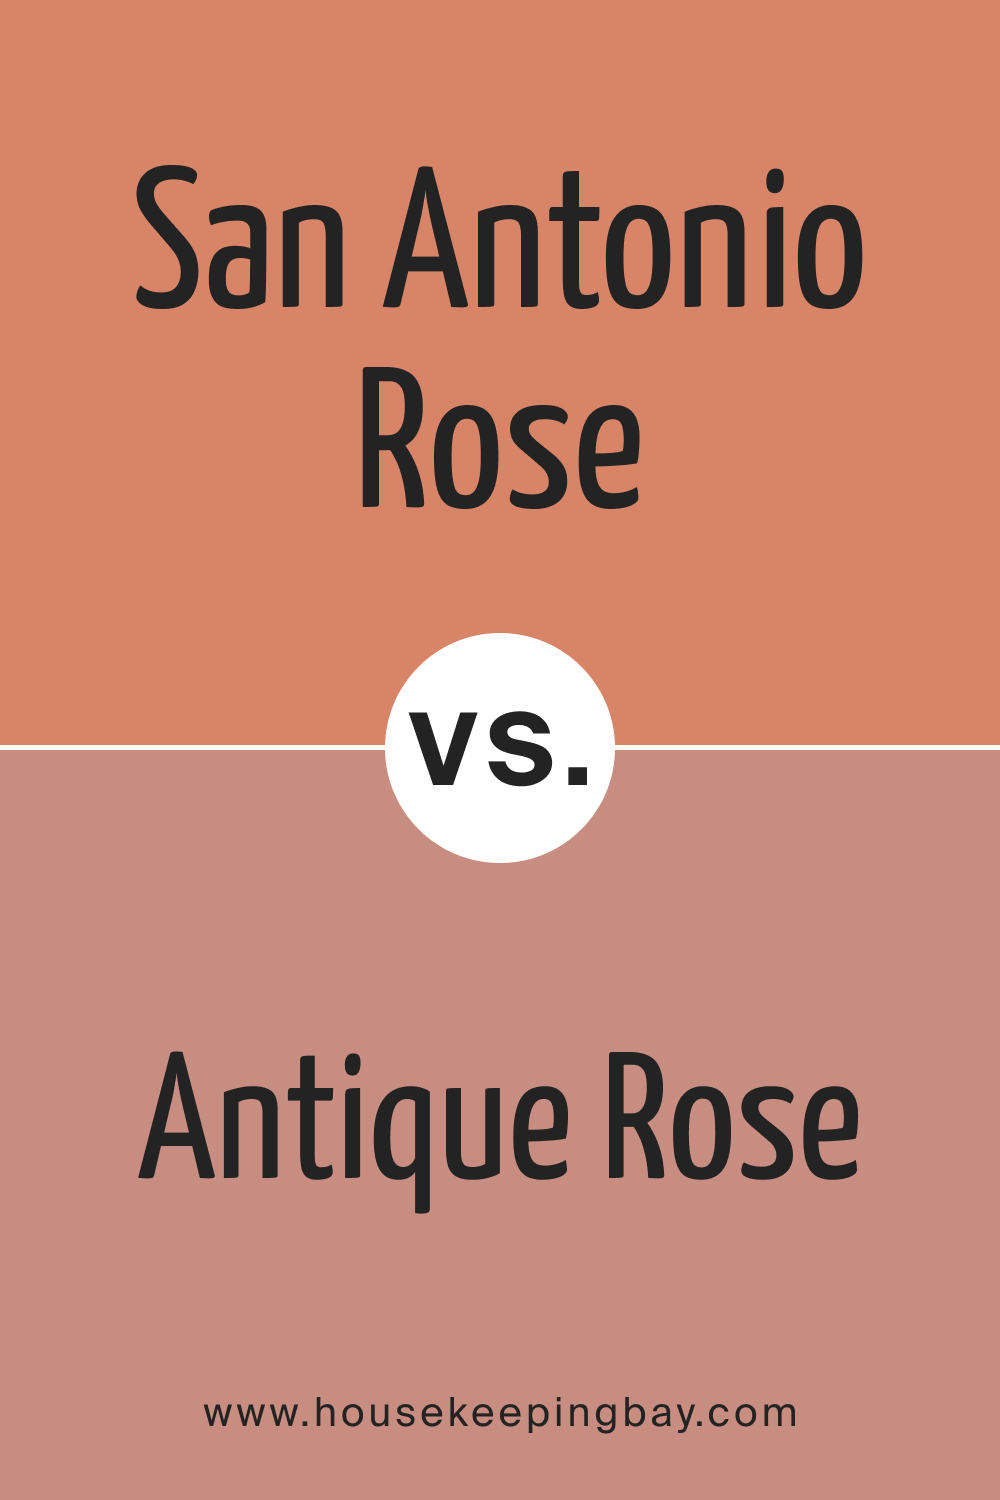 San Antonio Rose 027 vs. BM 2173 40 Antique Rose